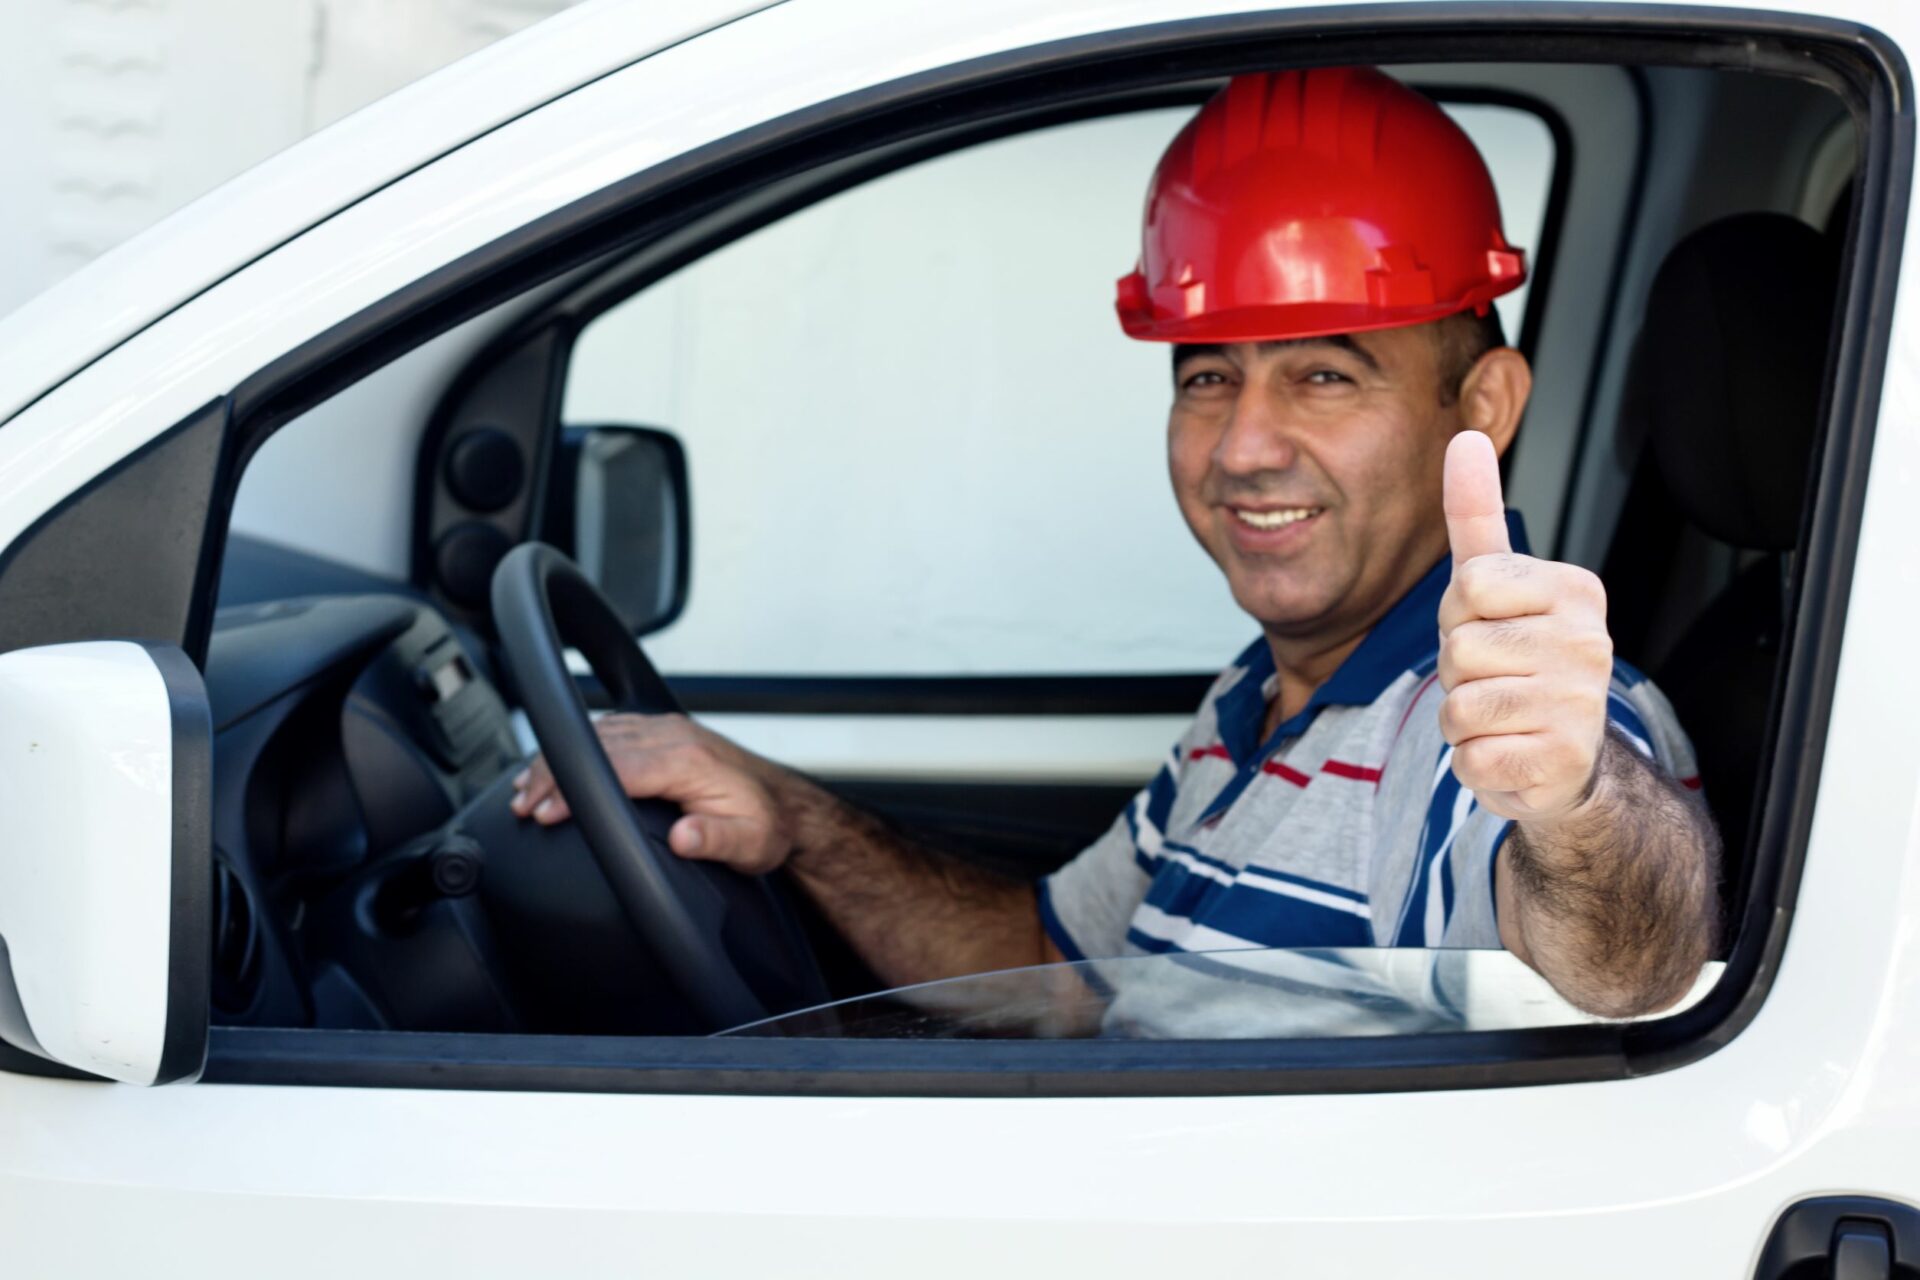 Driving Safety, Safety Training, OSHA Training